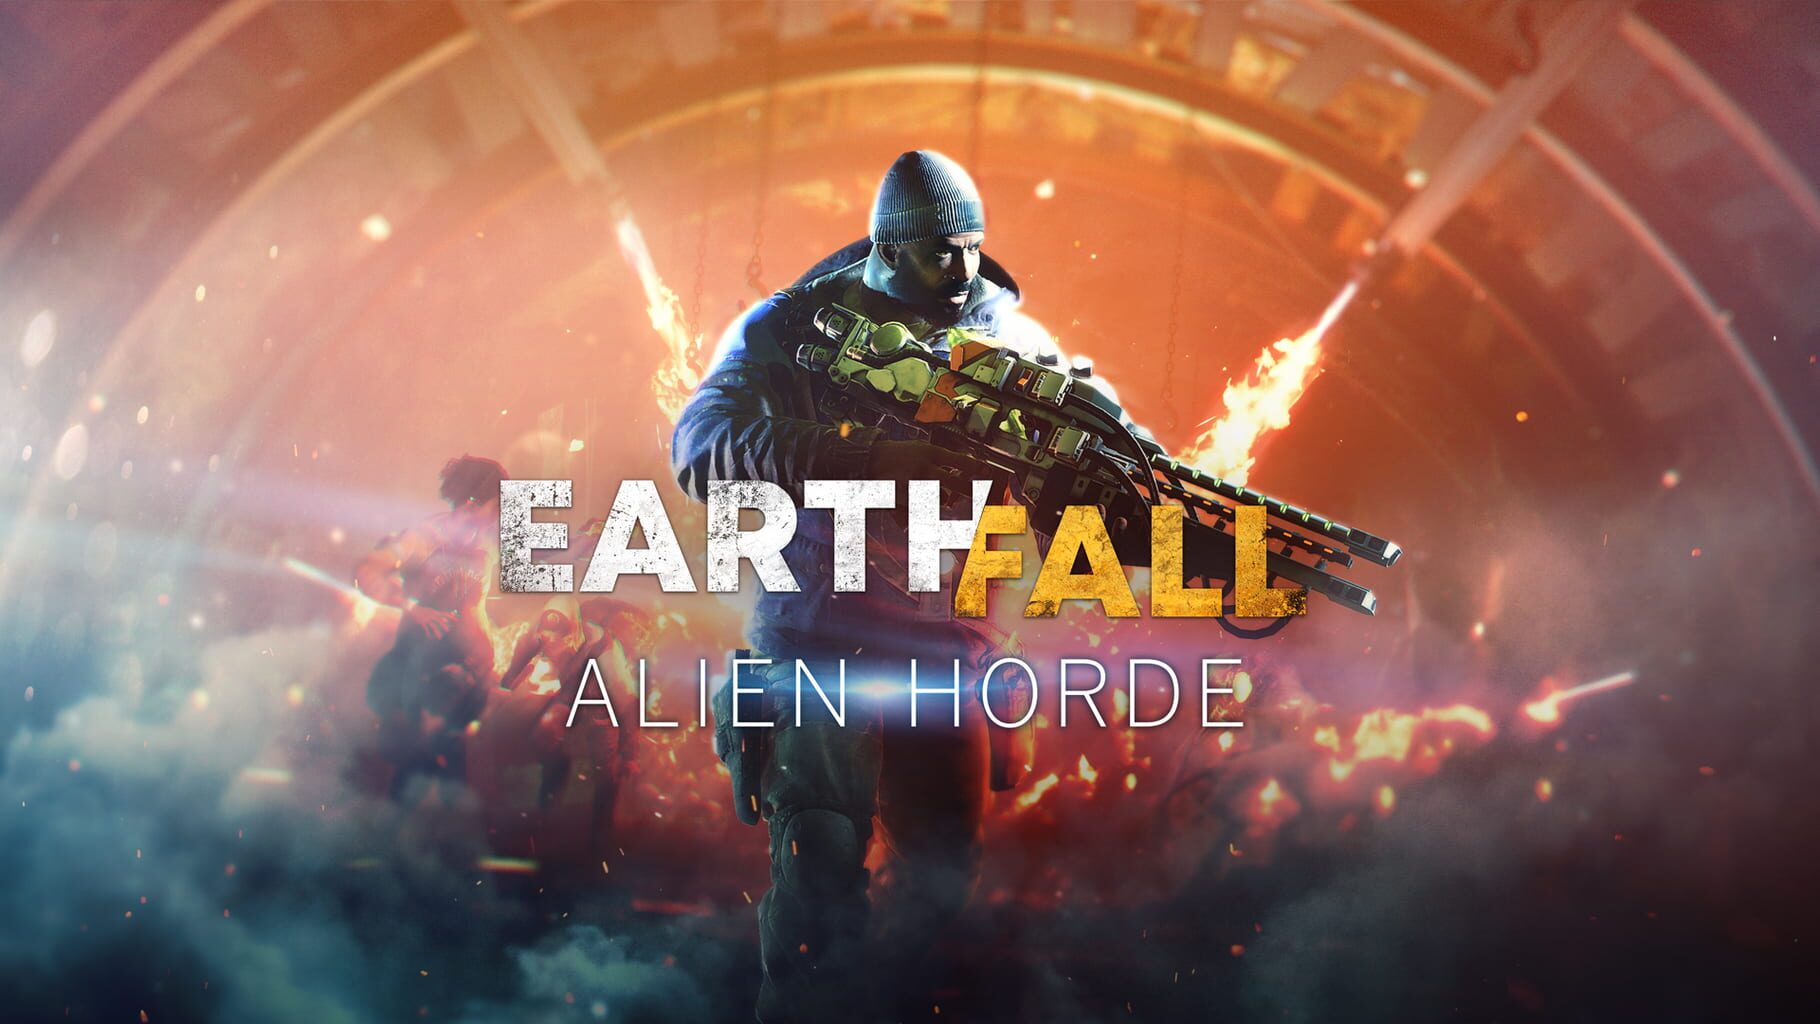 Earthfall: Alien Horde artwork